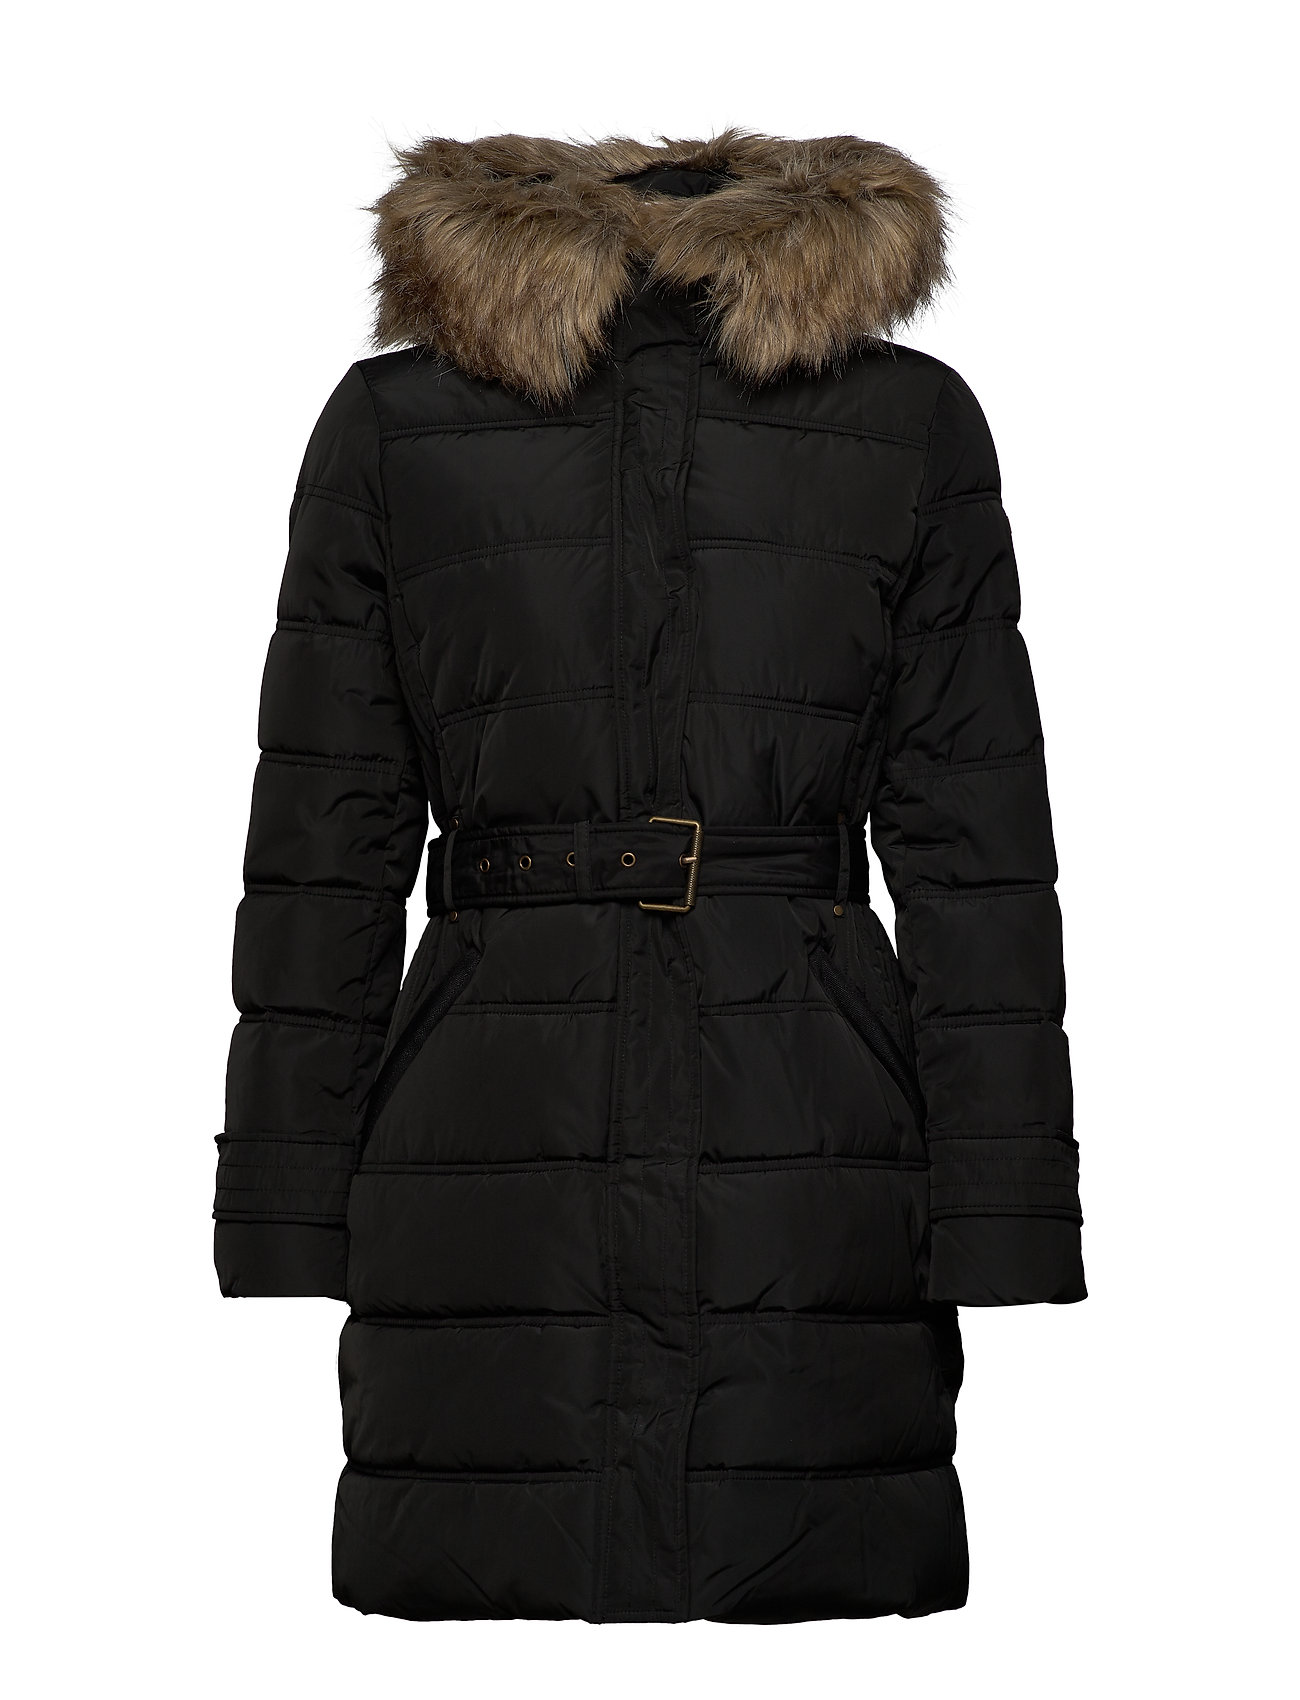 Coats Woven Black 16999 € Esprit Casual